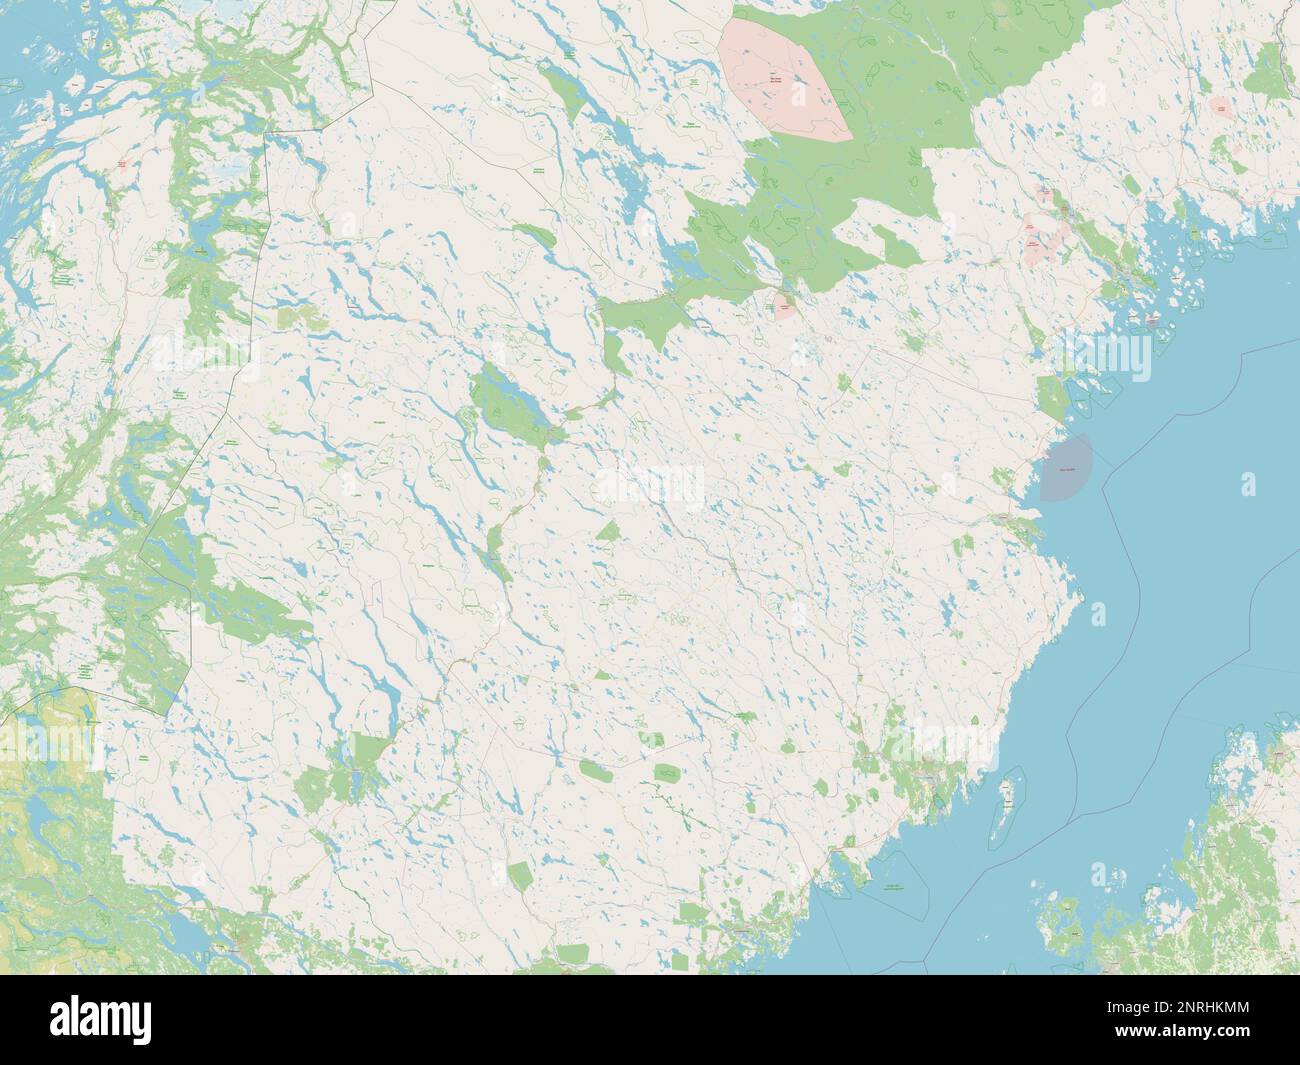 Vasterbotten, county of Sweden. Open Street Map Stock Photo